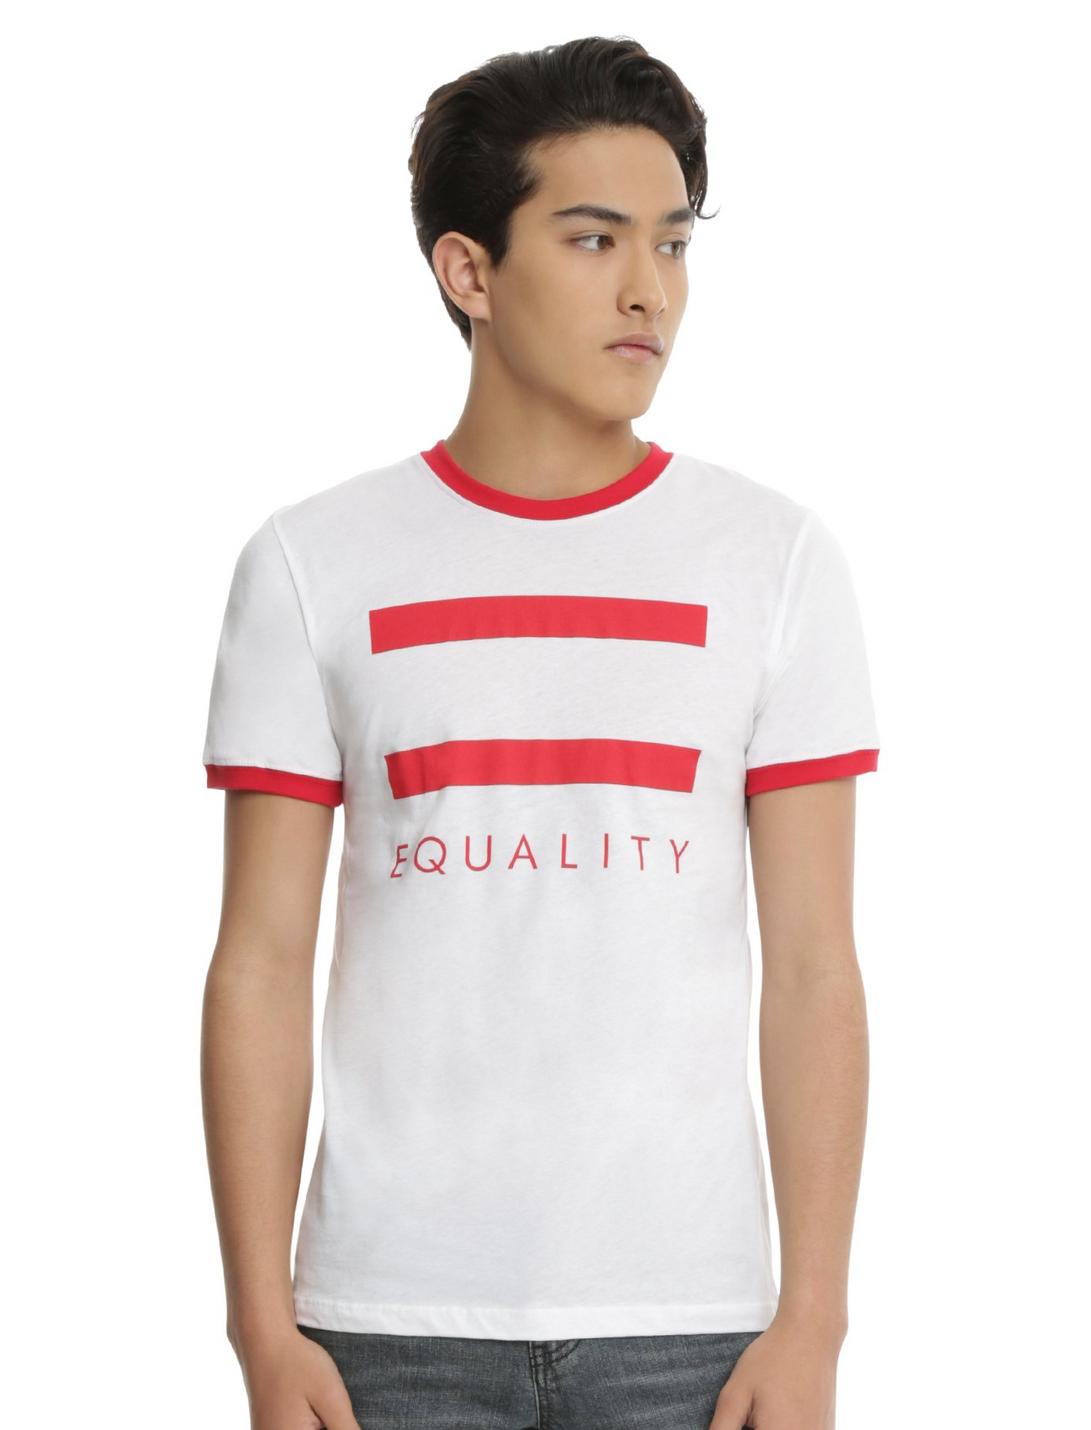 Equality Ringer T-Shirt, WHITE, hi-res